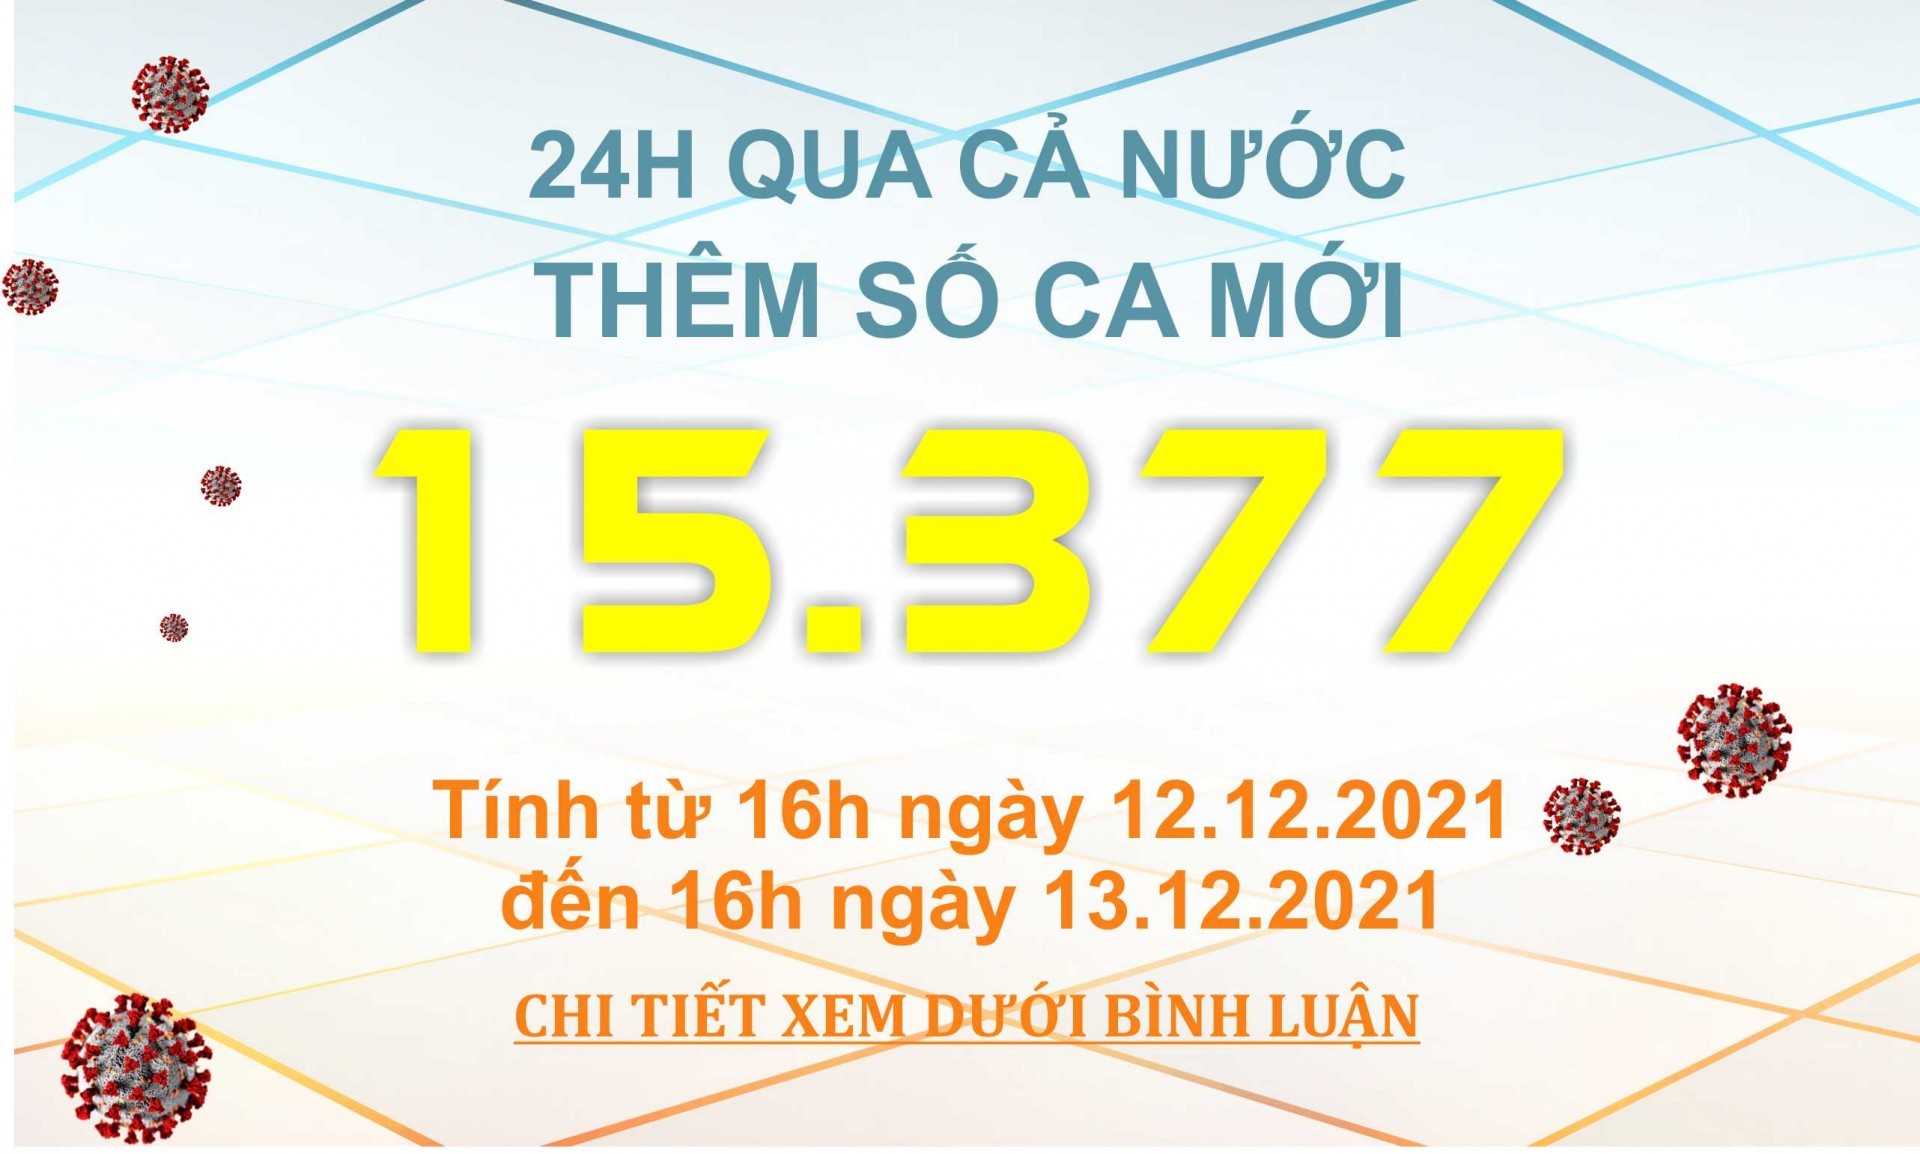 Ngày 13/12: Có 15.377 ca COVID-19, Hà Nội ghi nhận số mắc nhiều nhất cả nước với 1.000 ca